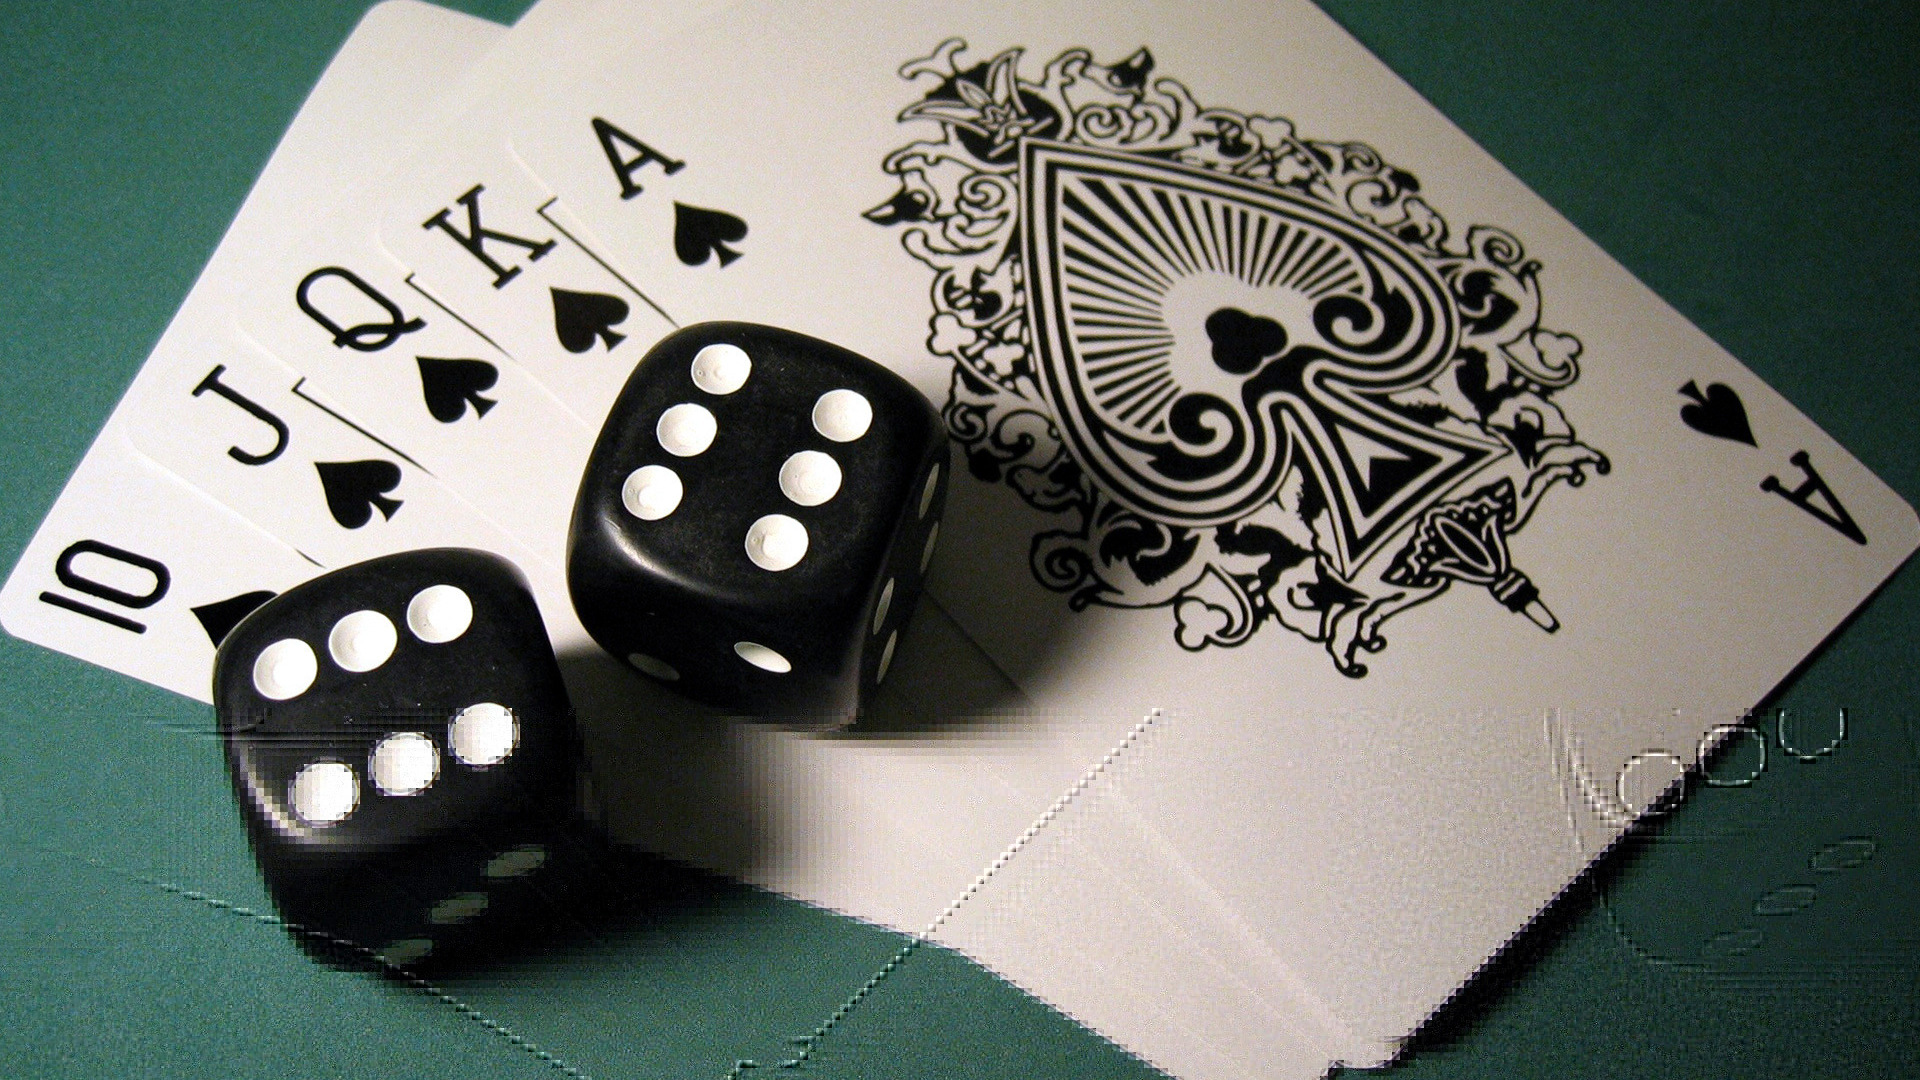 Покер и бизнес: какие уроки можно применить для успеха в жизни